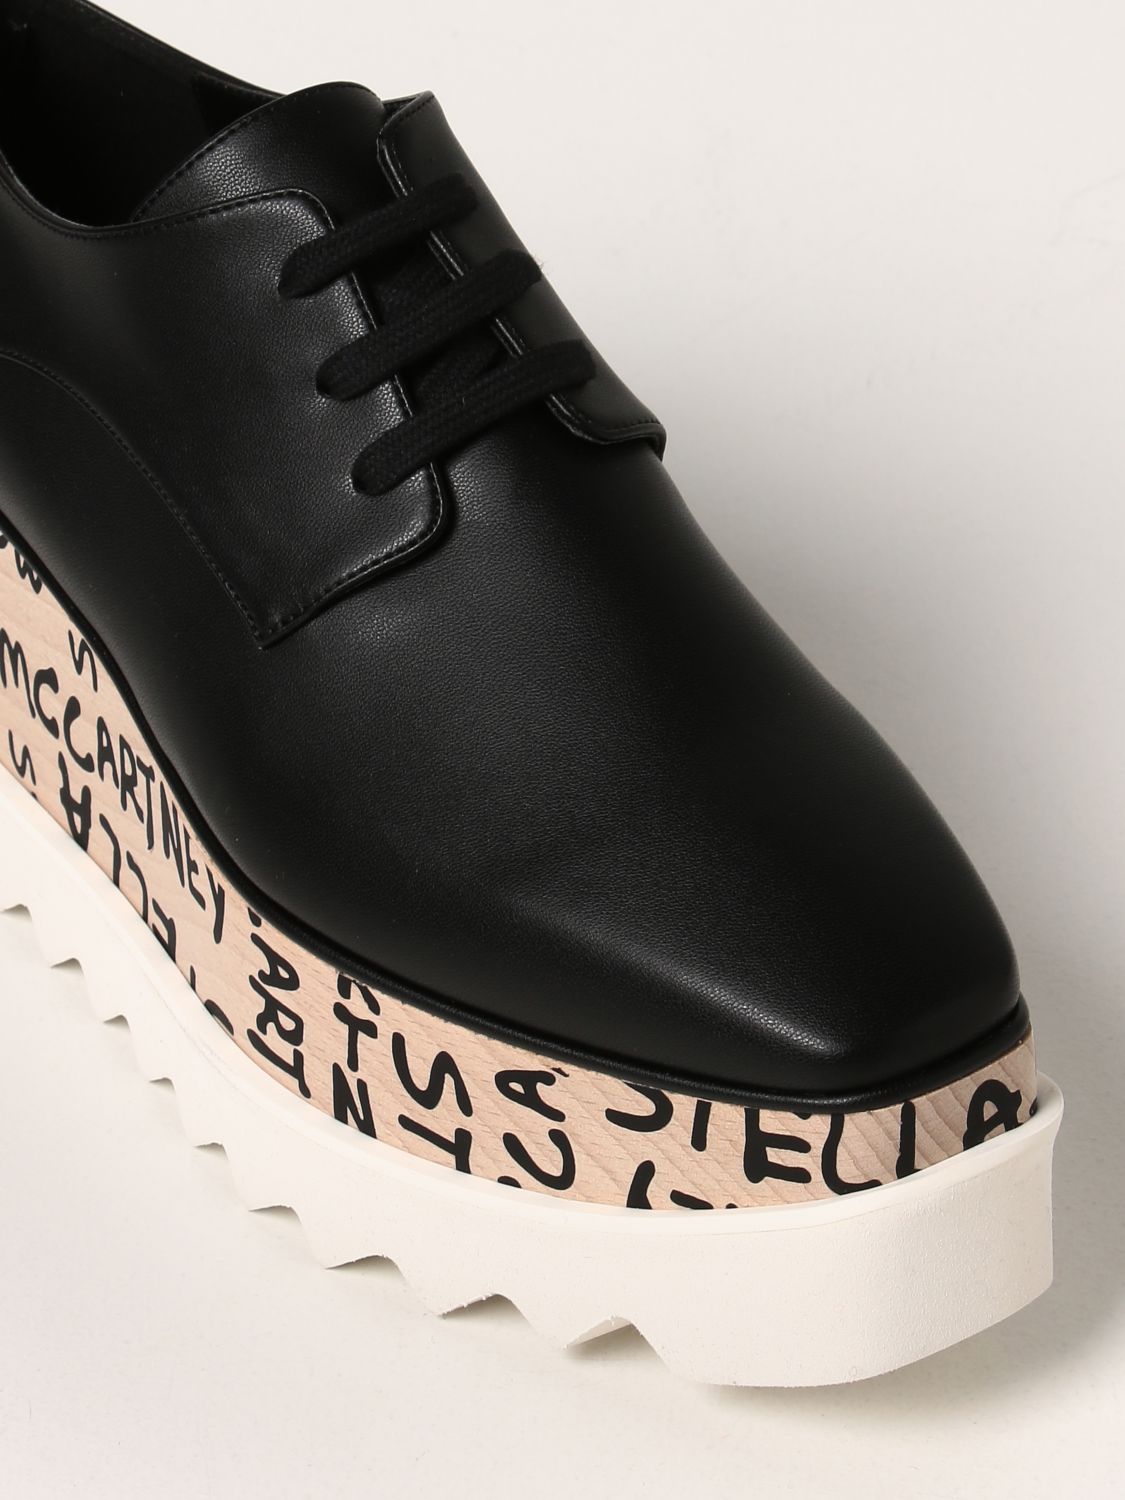 Sandalias de Stella McCartney de color Negro Mujer Zapatos de Tacones de Cuñas y zapatos de salón 